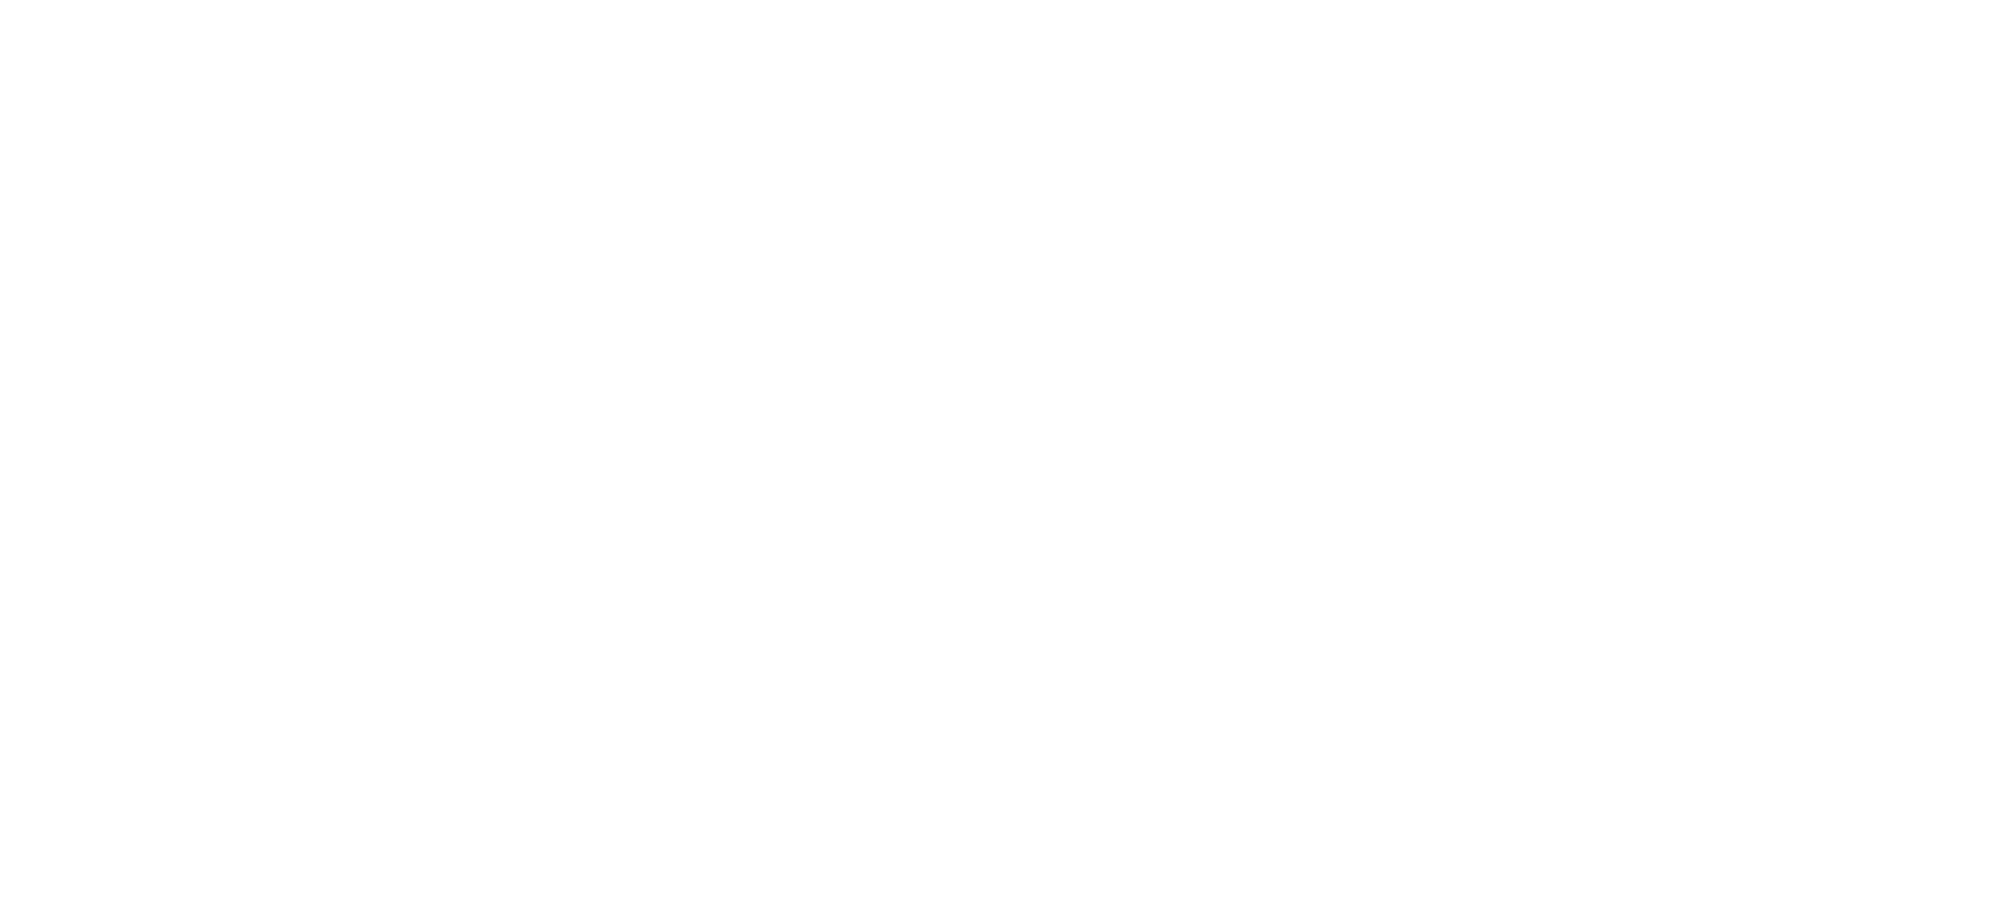 Freedom Lending Group